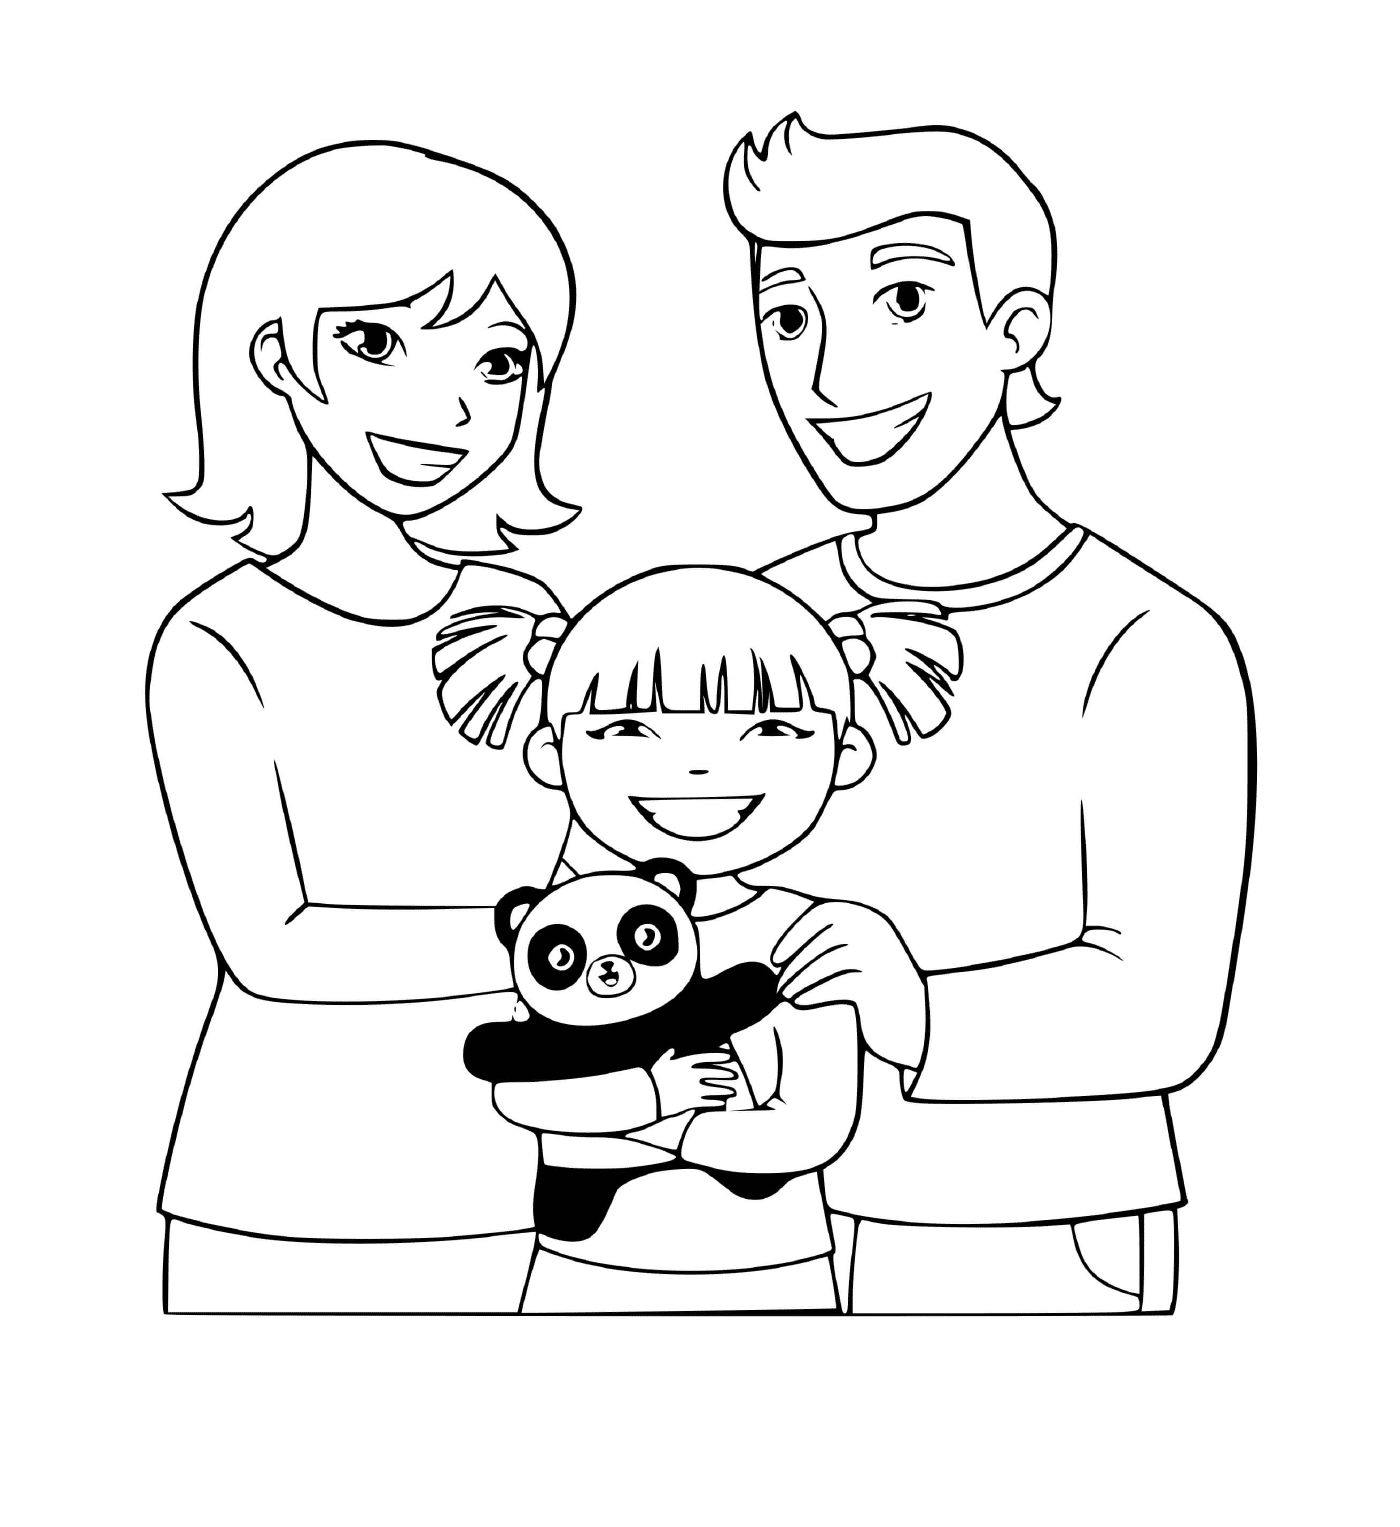  一个家庭,有他们唯一的女儿和她的胖熊猫 